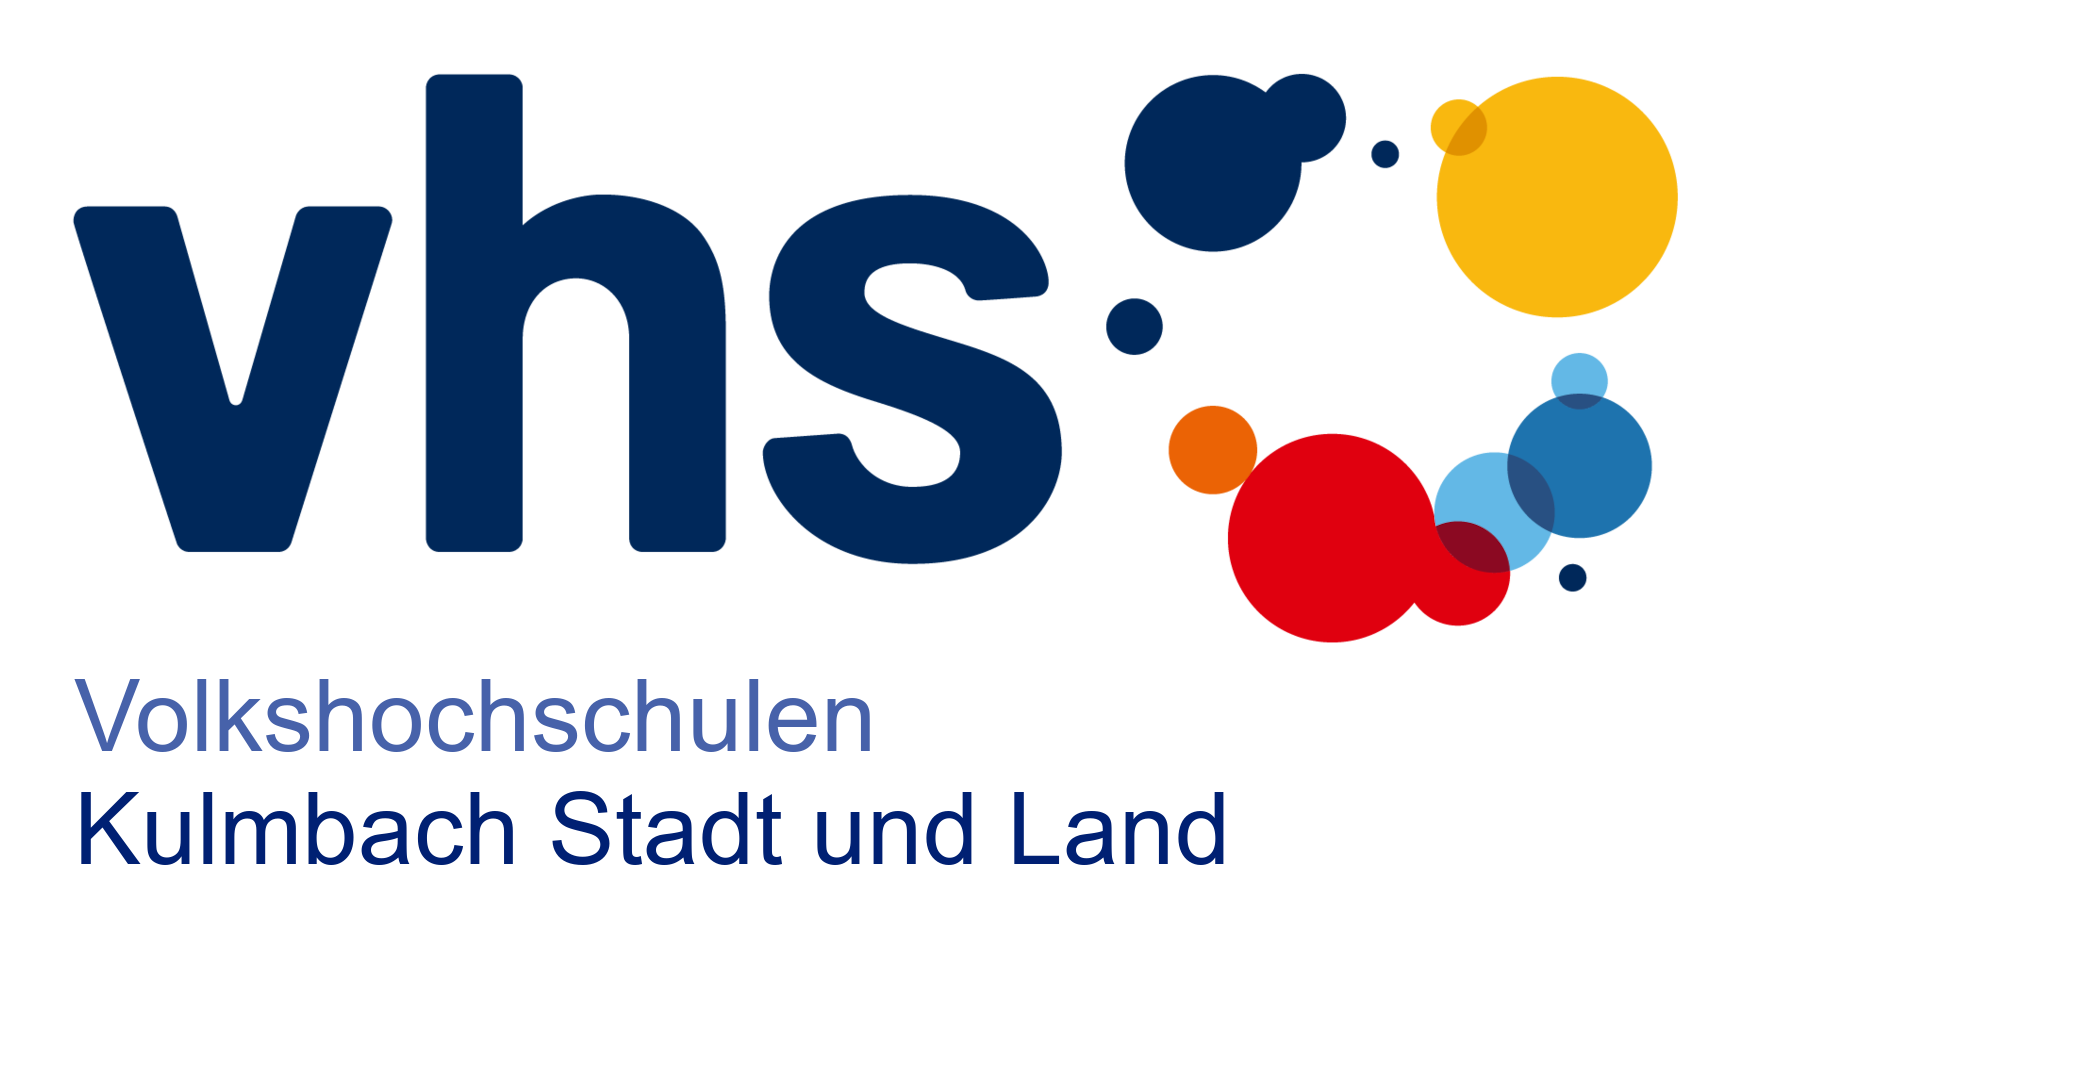 vhs - Volkshochschulen Kulmbach Stadt und Land